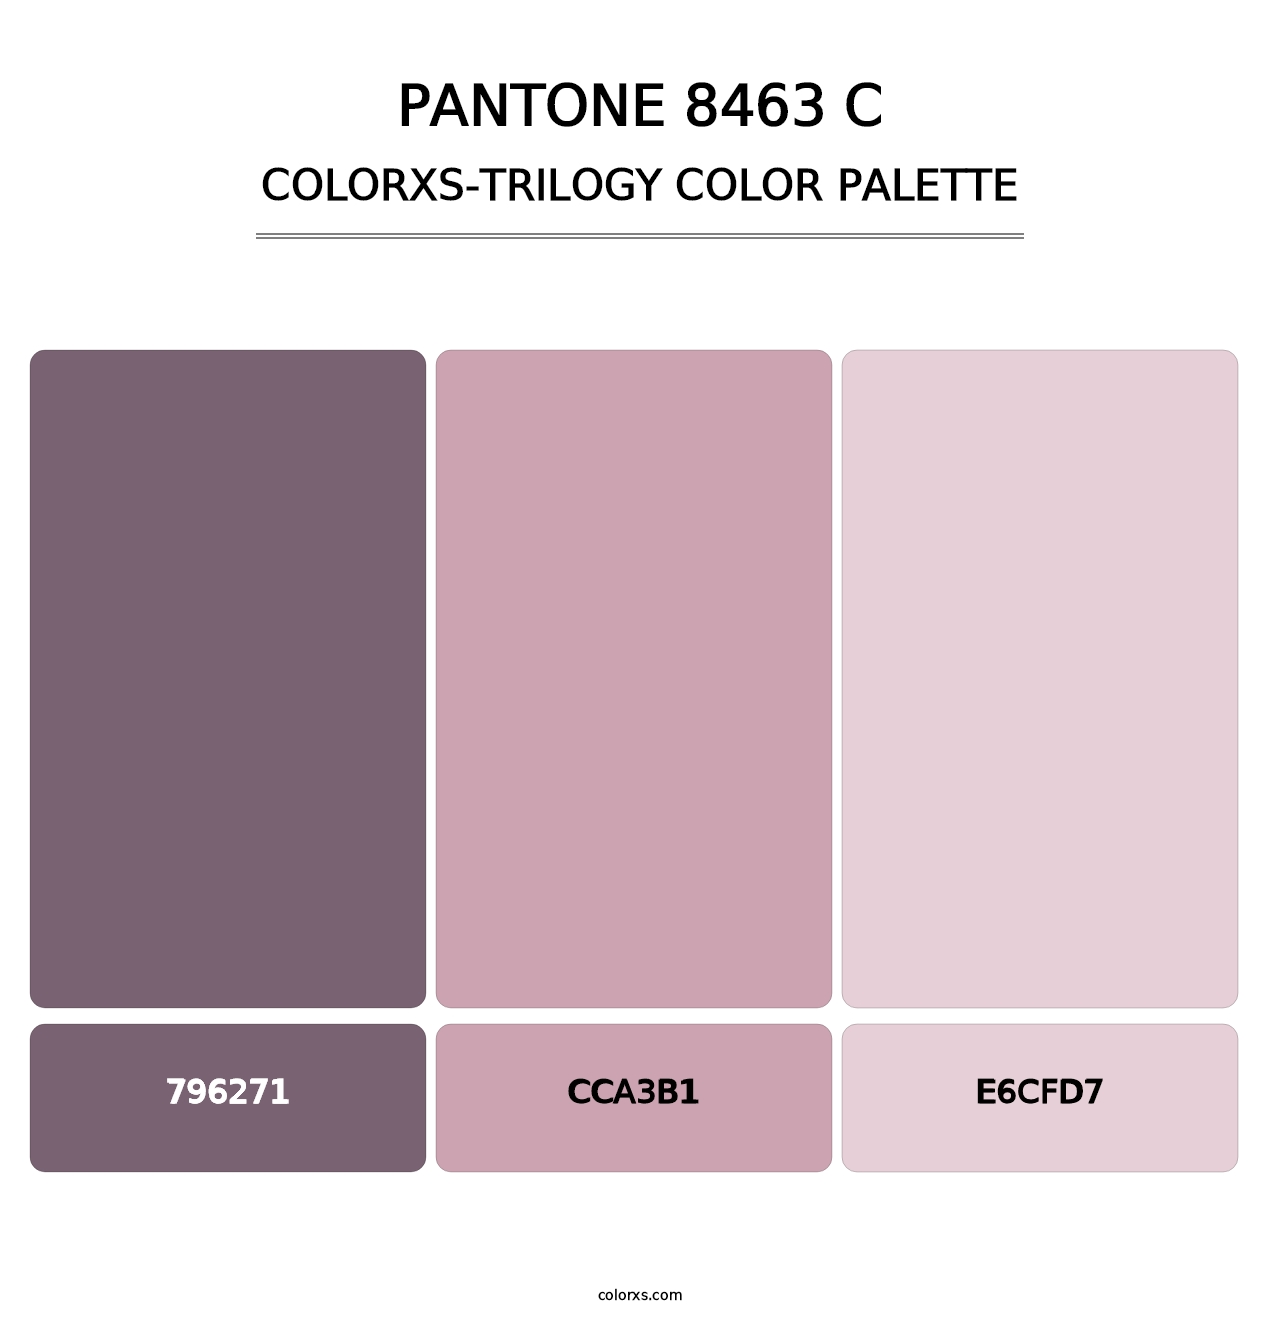 PANTONE 8463 C - Colorxs Trilogy Palette